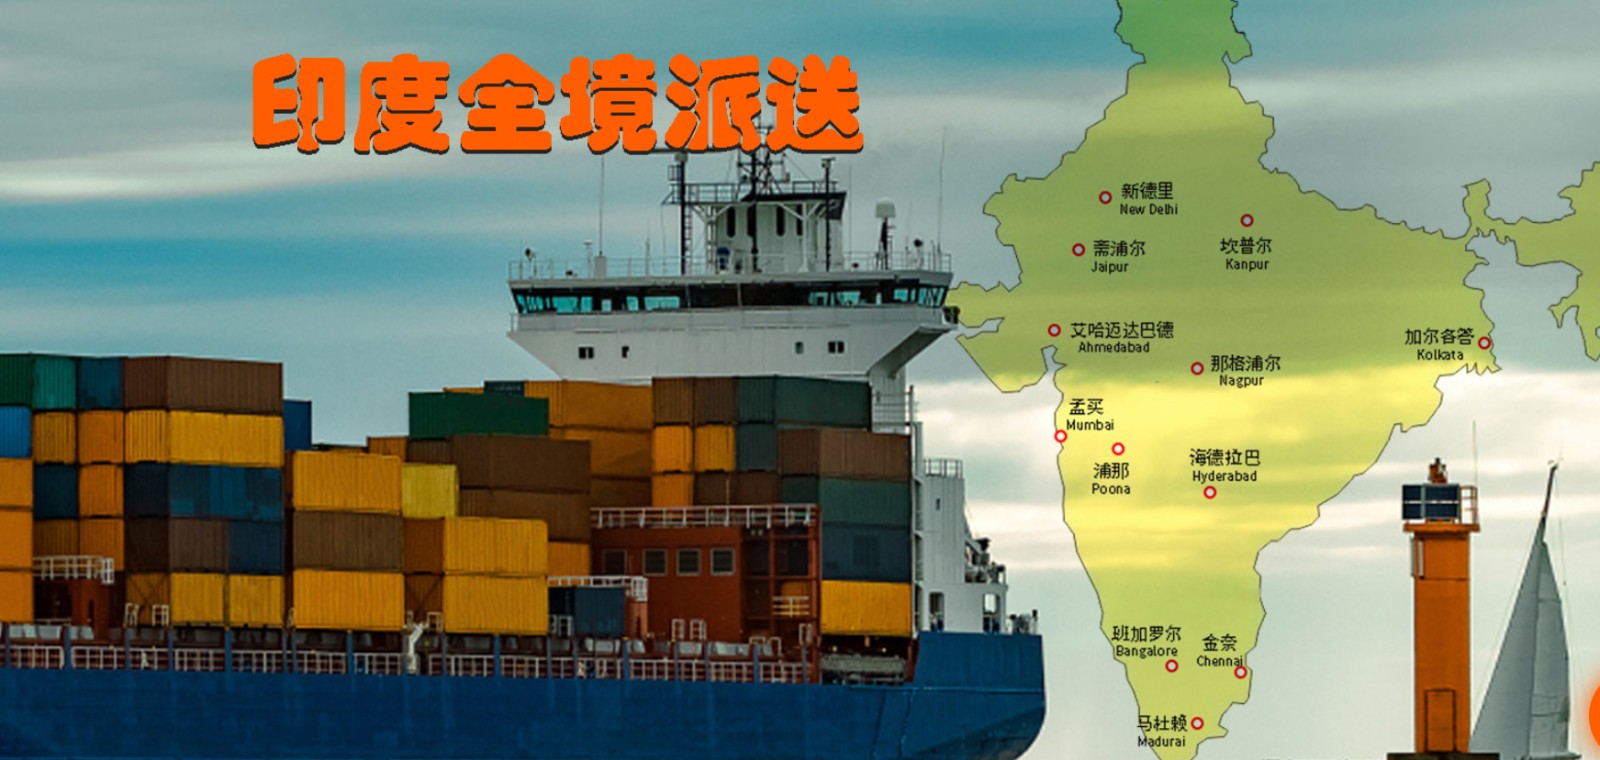 印度货货运代理 印度国际物流公司  印度进出口报关公司 印度国际货运代理有限公司